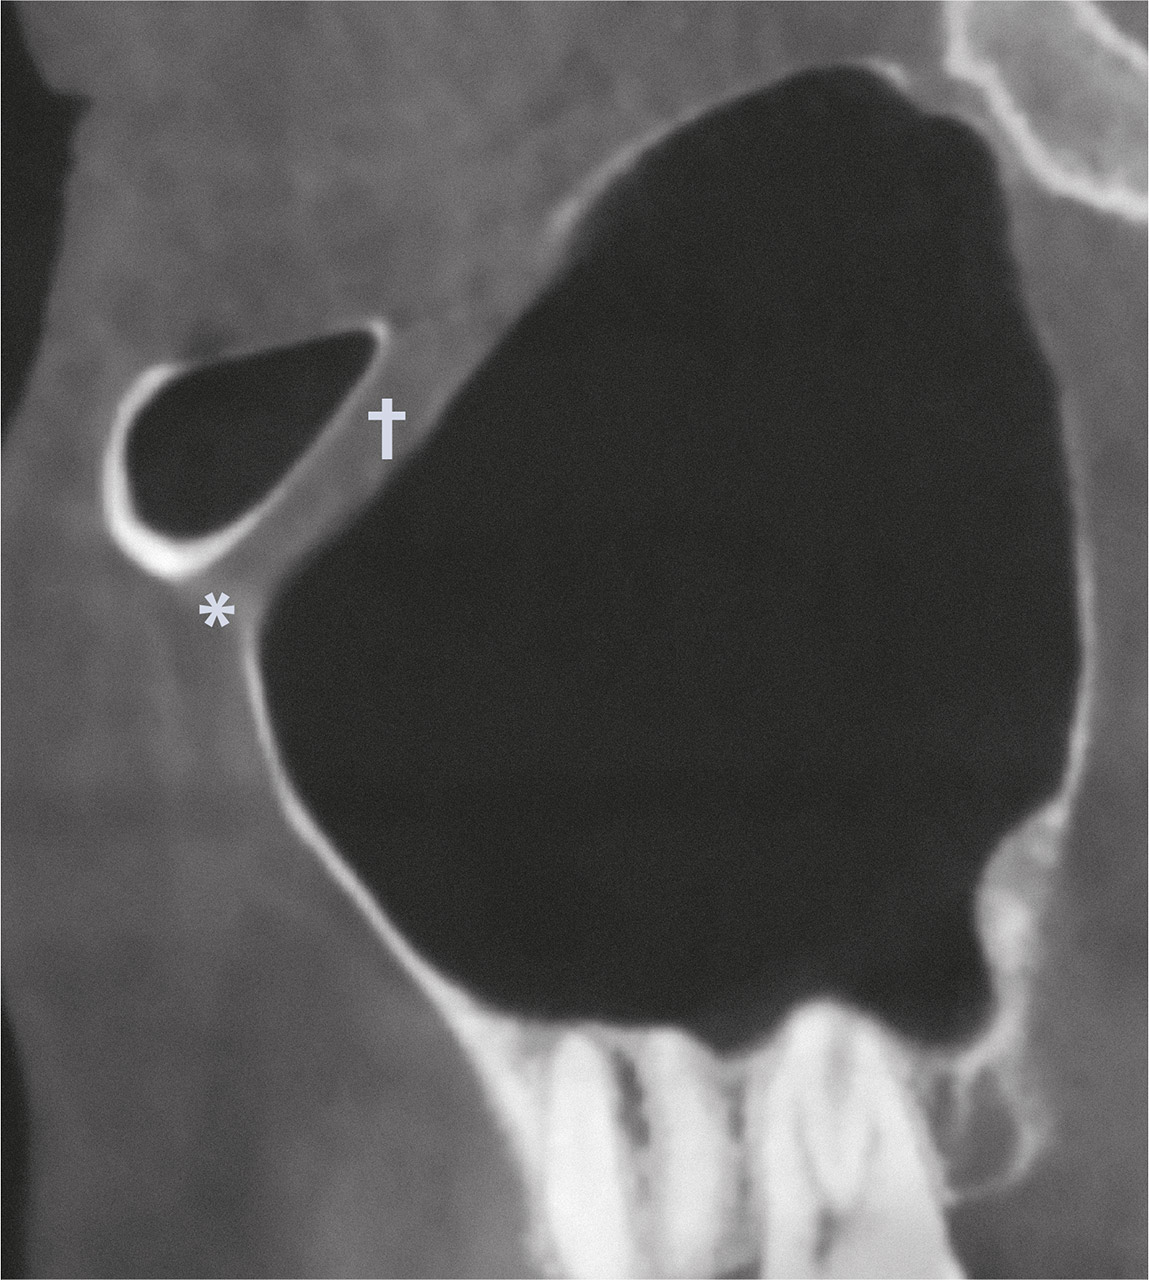 Abb. 1b DVT – schräg-sagittale Ansicht. Darstellung der rechten Kieferhöhle mit Foramen infraorbitale (*) und Canalis infraorbitalis (†).